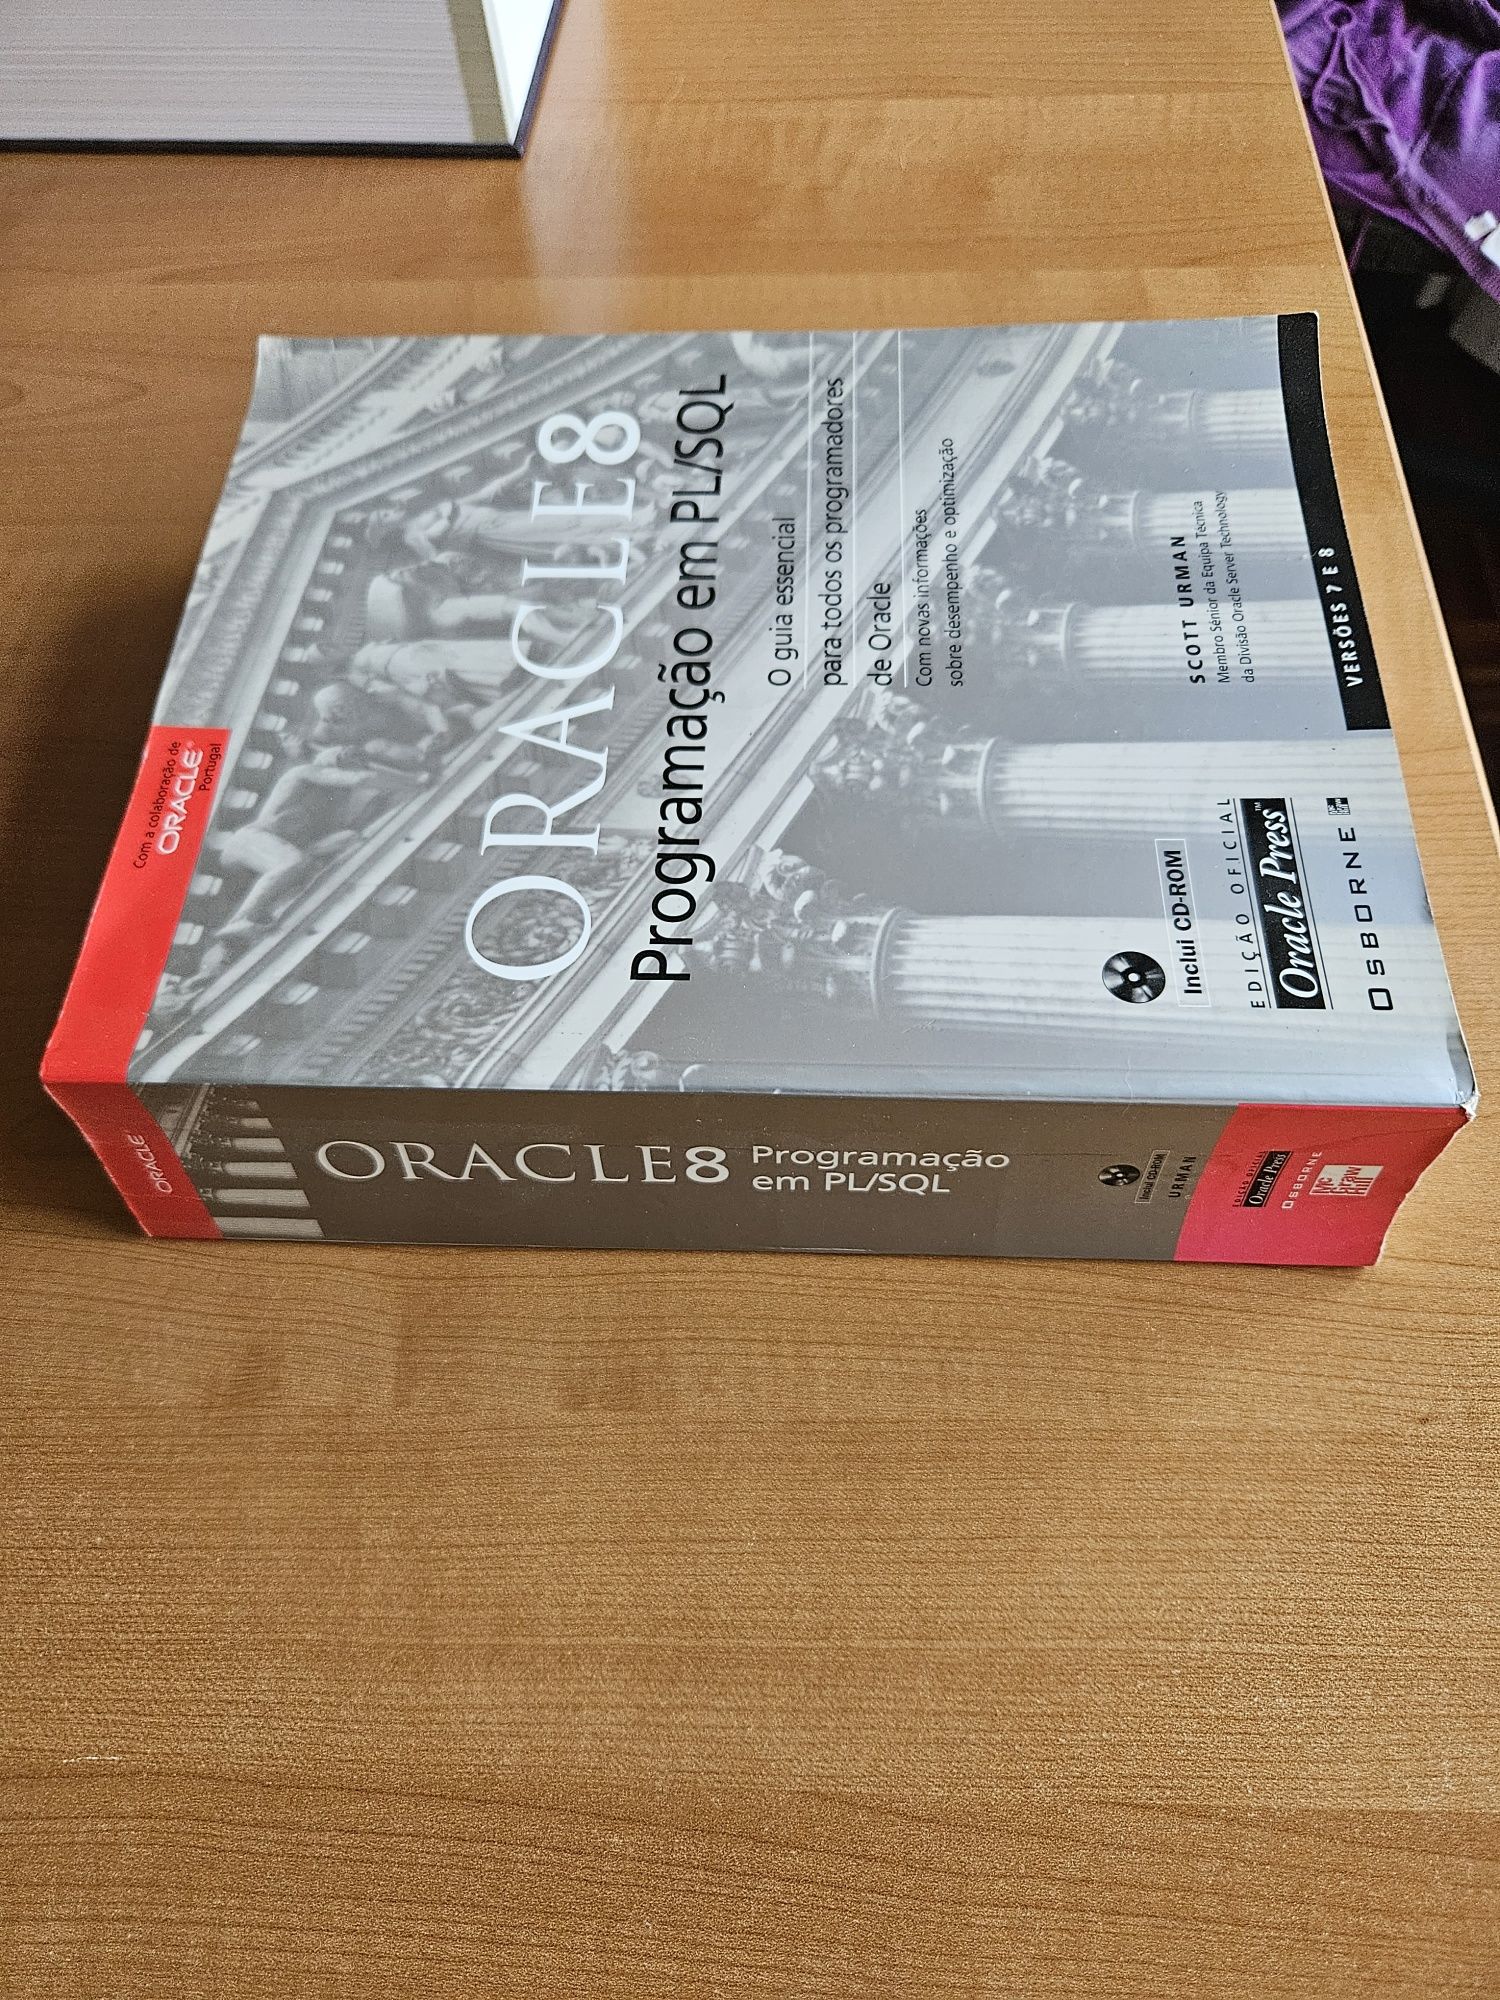 Oracle 8 Programação em PL/SQL